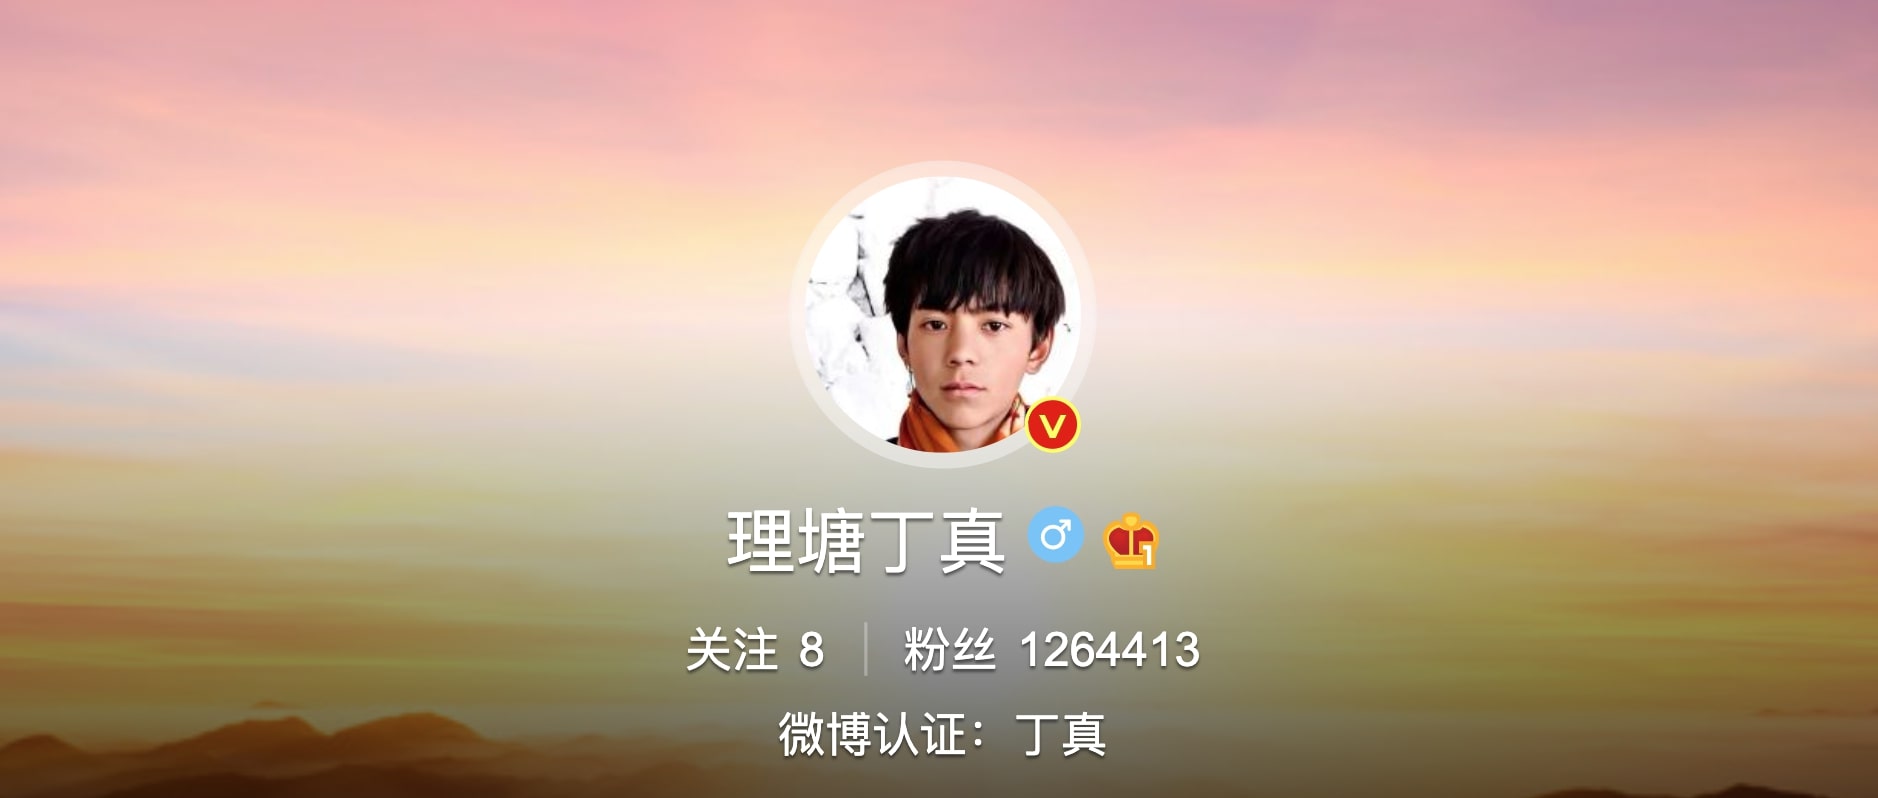 丁真（ディン・ジェン） Weibo公式アカウント